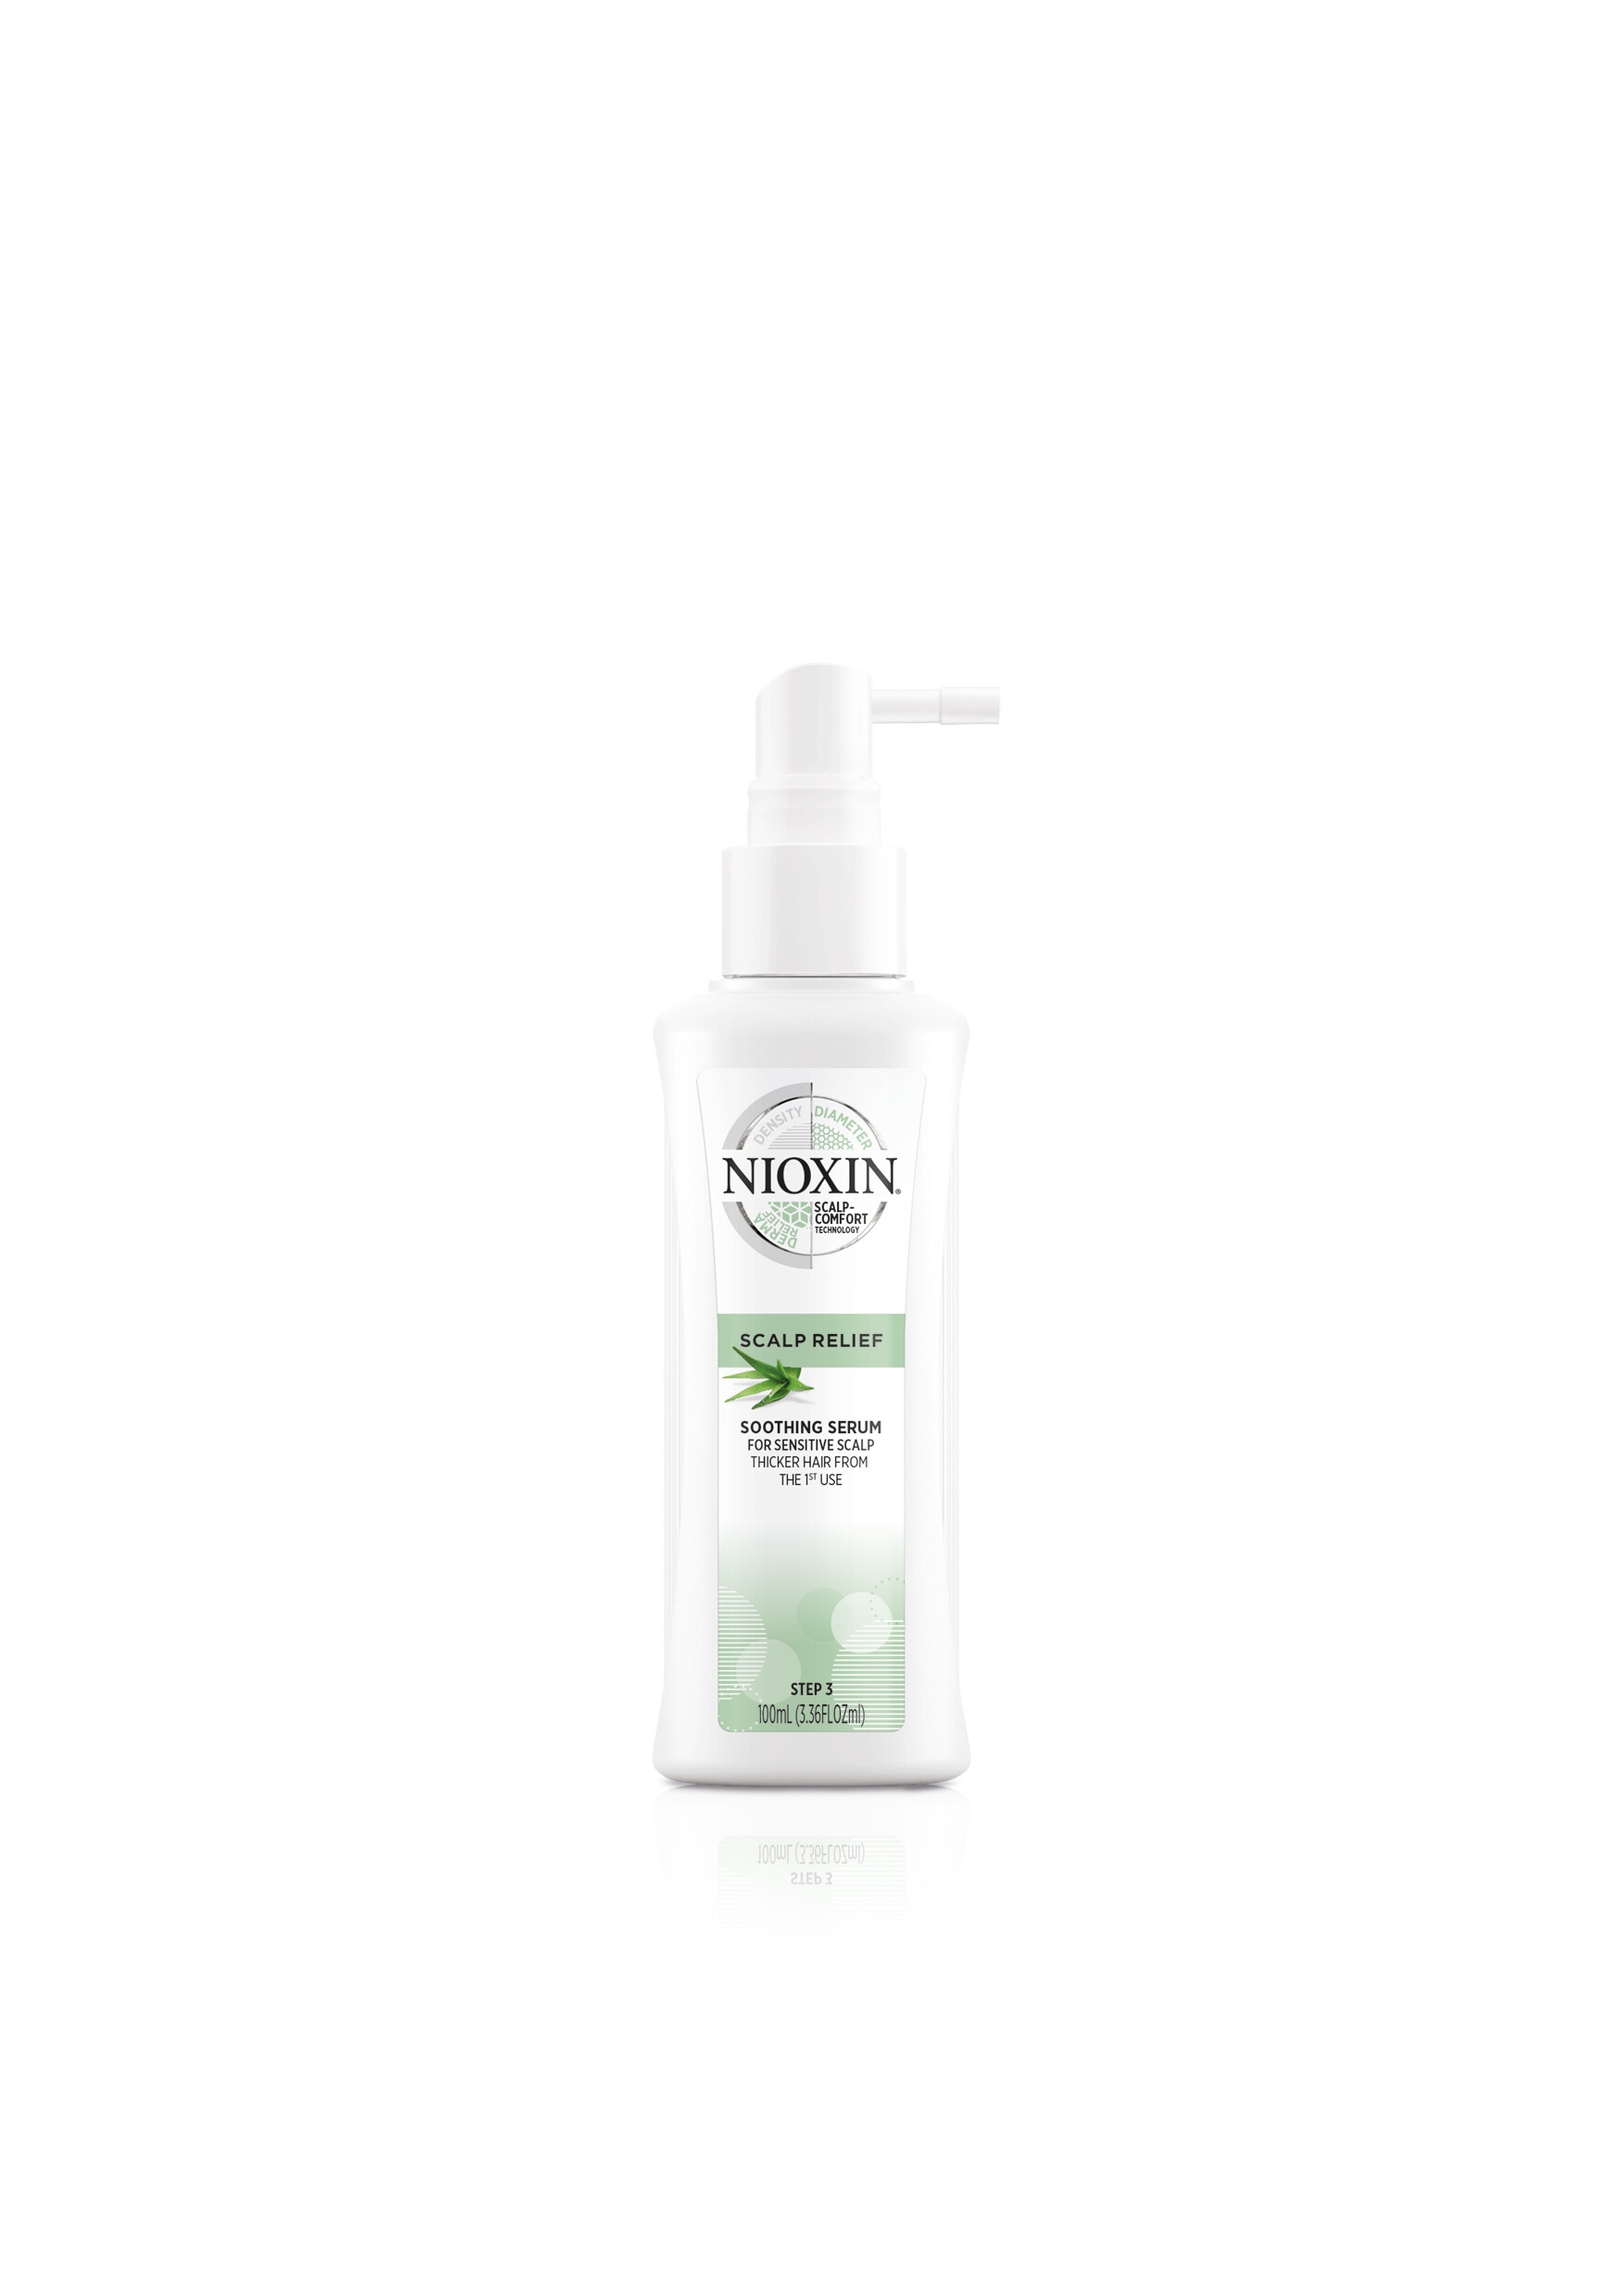 Сыворотки для волос:  NIOXIN -  Успокаивающая сыворотка Scalp Relief (100 мл)